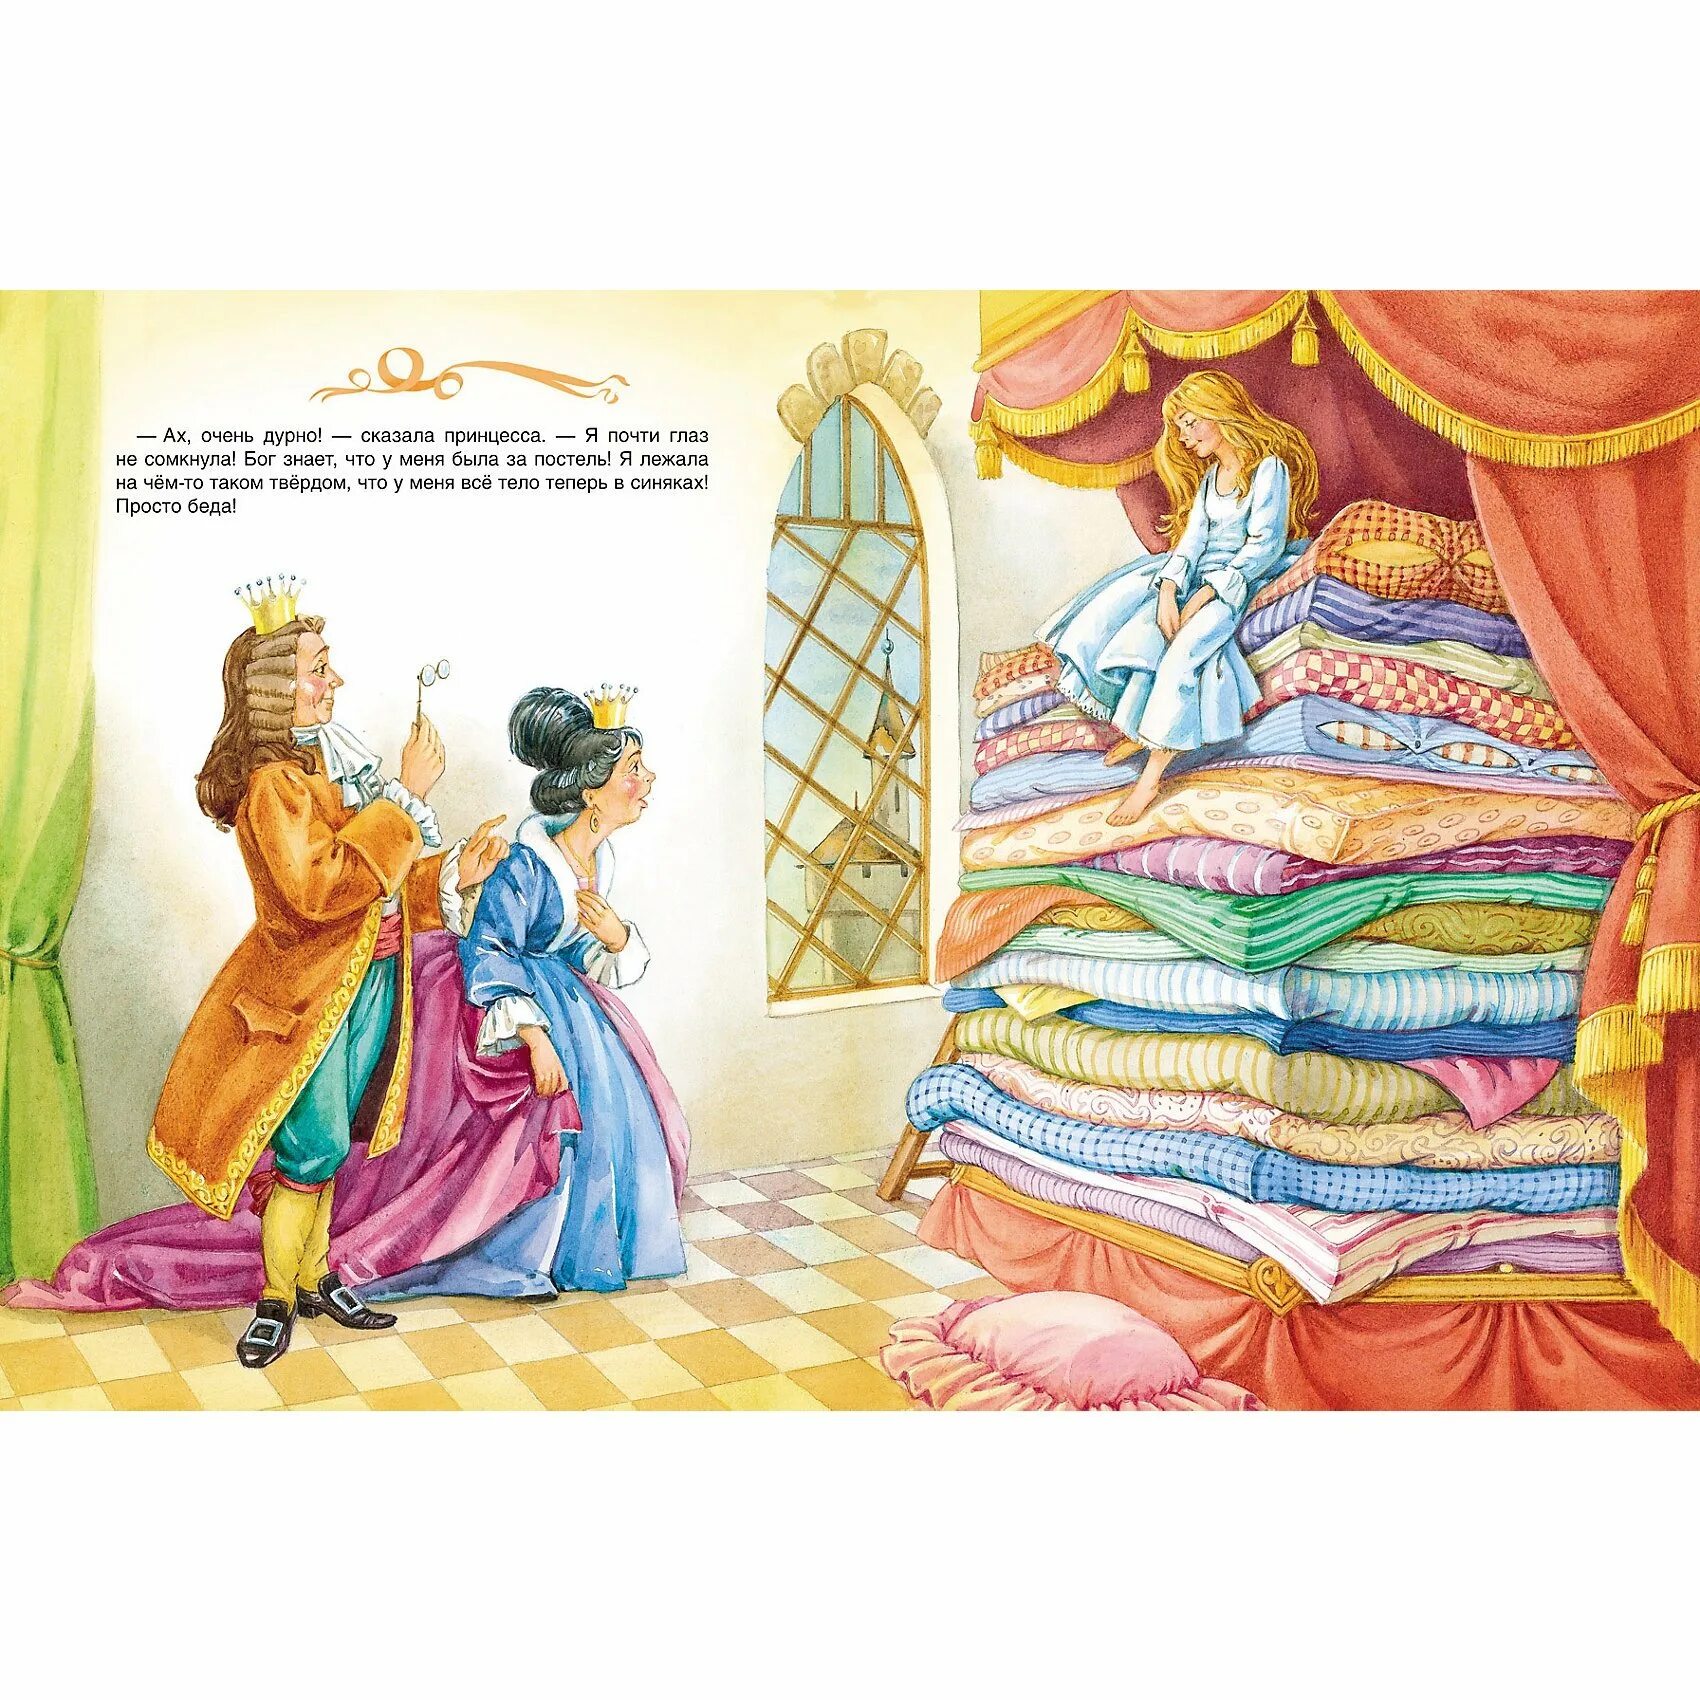 Принцесса на горошине: сказки. Сказки Андерсена принцесса на горошине. Андерсен х.к. "принцесса на горошине". Иллюстрации к сказке Андерсена принцесса на горошине.